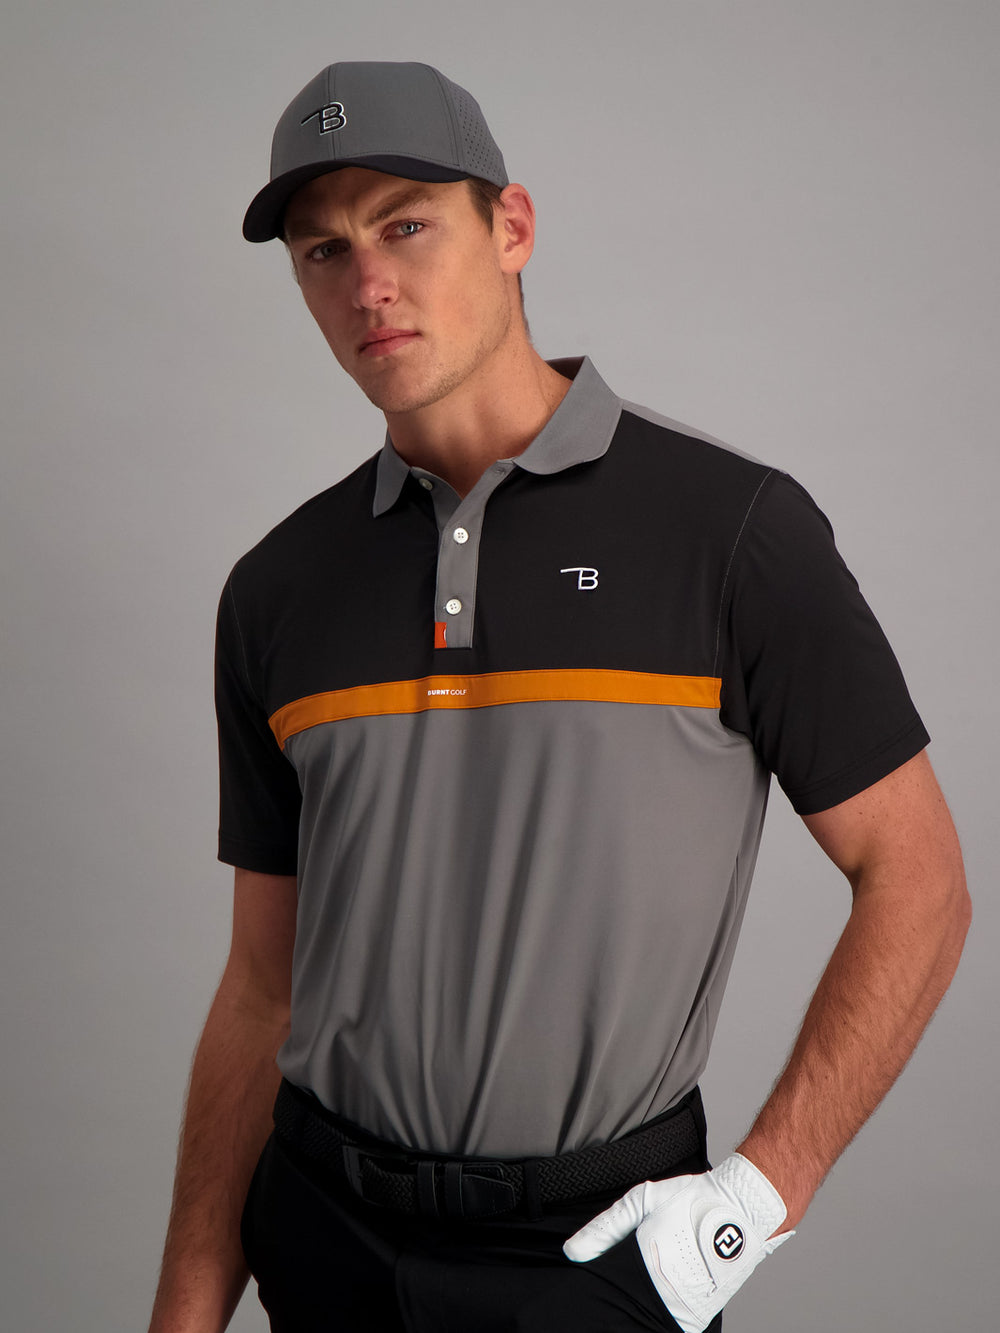 Mens Golf Shirt - Charcoal/Black